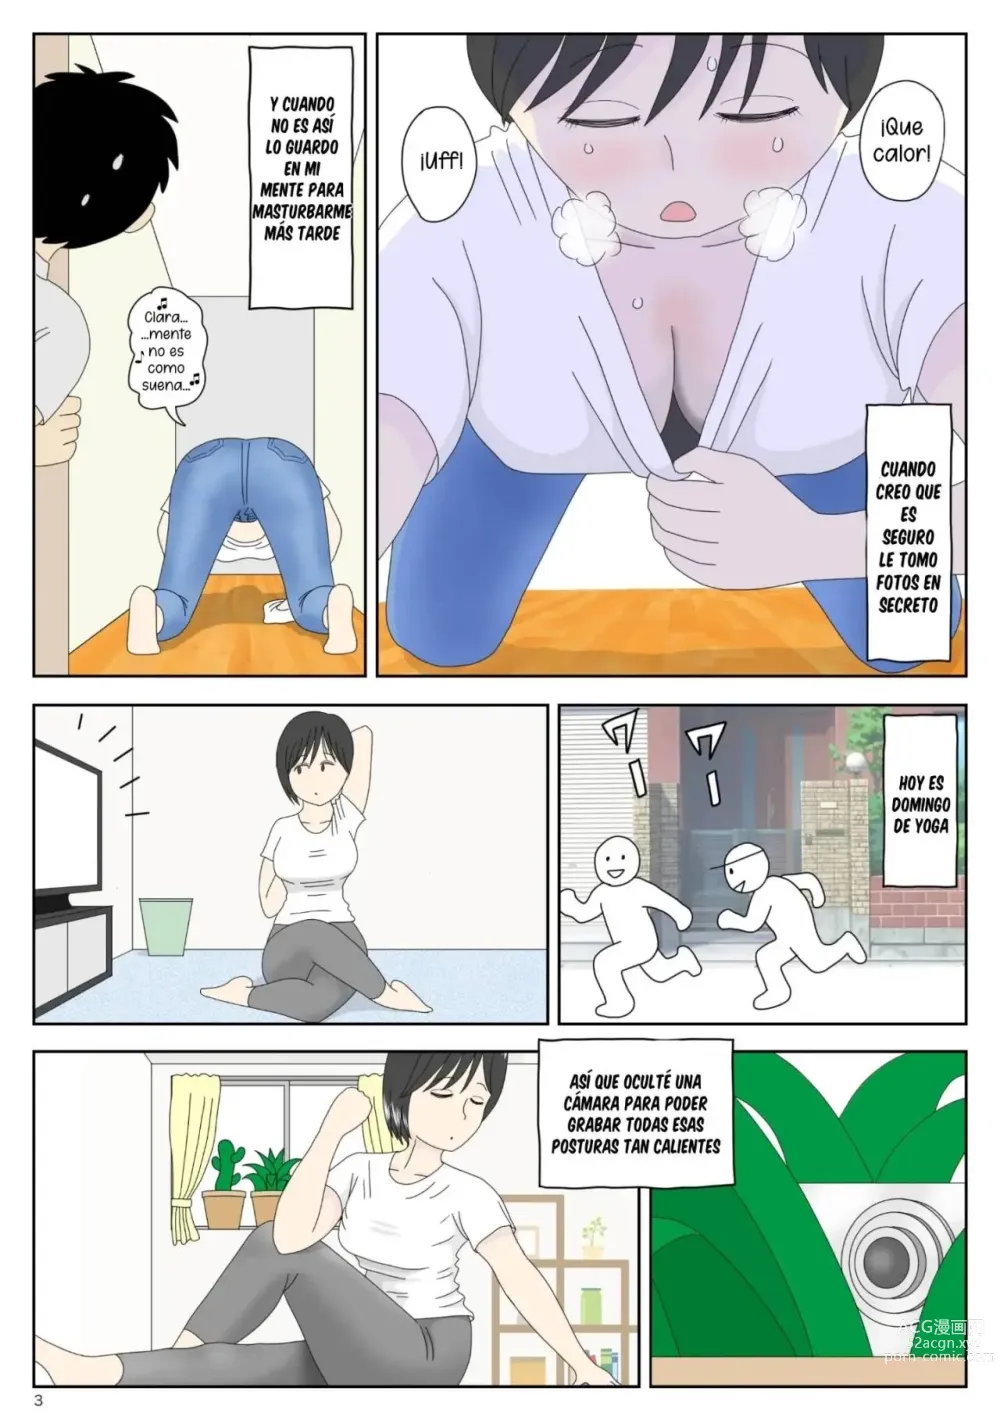 Page 3 of doujinshi Mamá  es mi material para masturbación 01